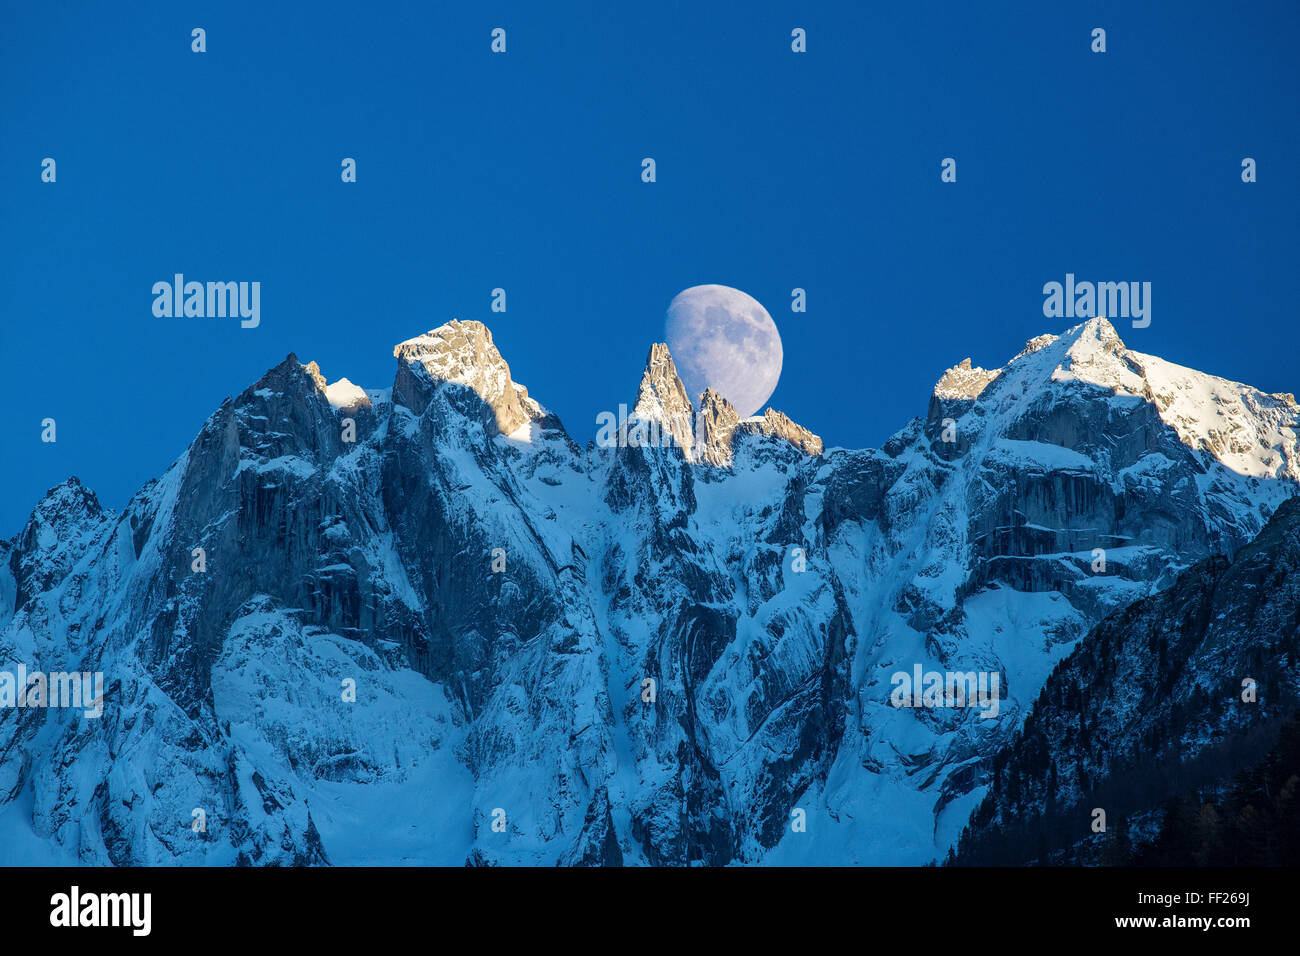 La luna appare dietro le montagne nevose illuminare i picchi al tramonto, Val Bondasca, alpi svizzere, Svizzera, Europa Foto Stock